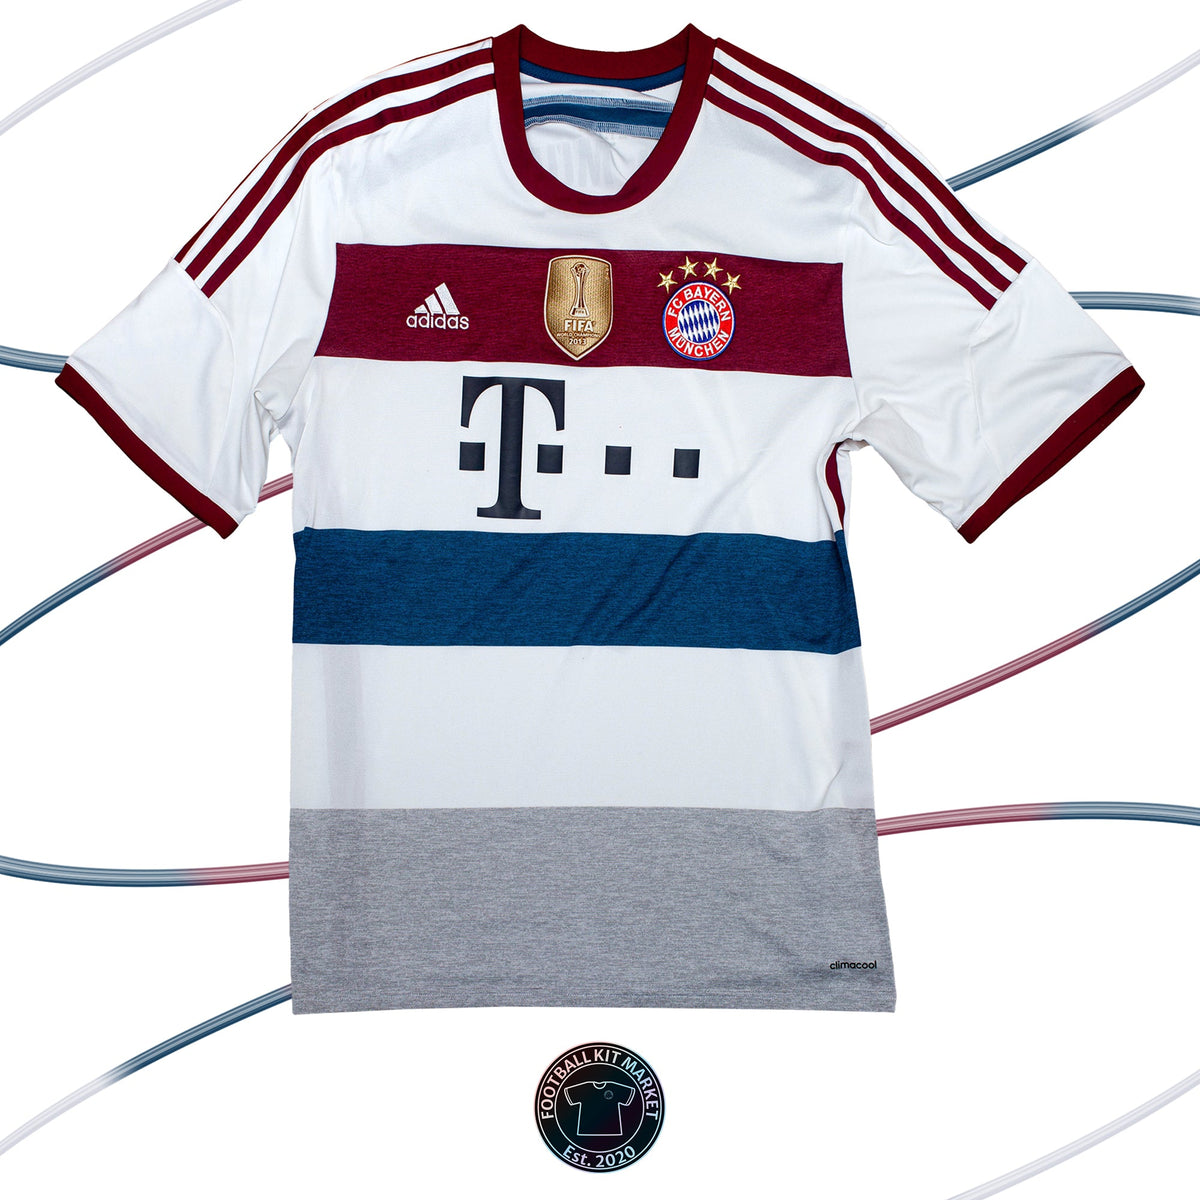 Genuine BAYERN MUNICH Away Shirt (2014-2015) - ADIDAS (XL) - Product Image from Football Kit Market